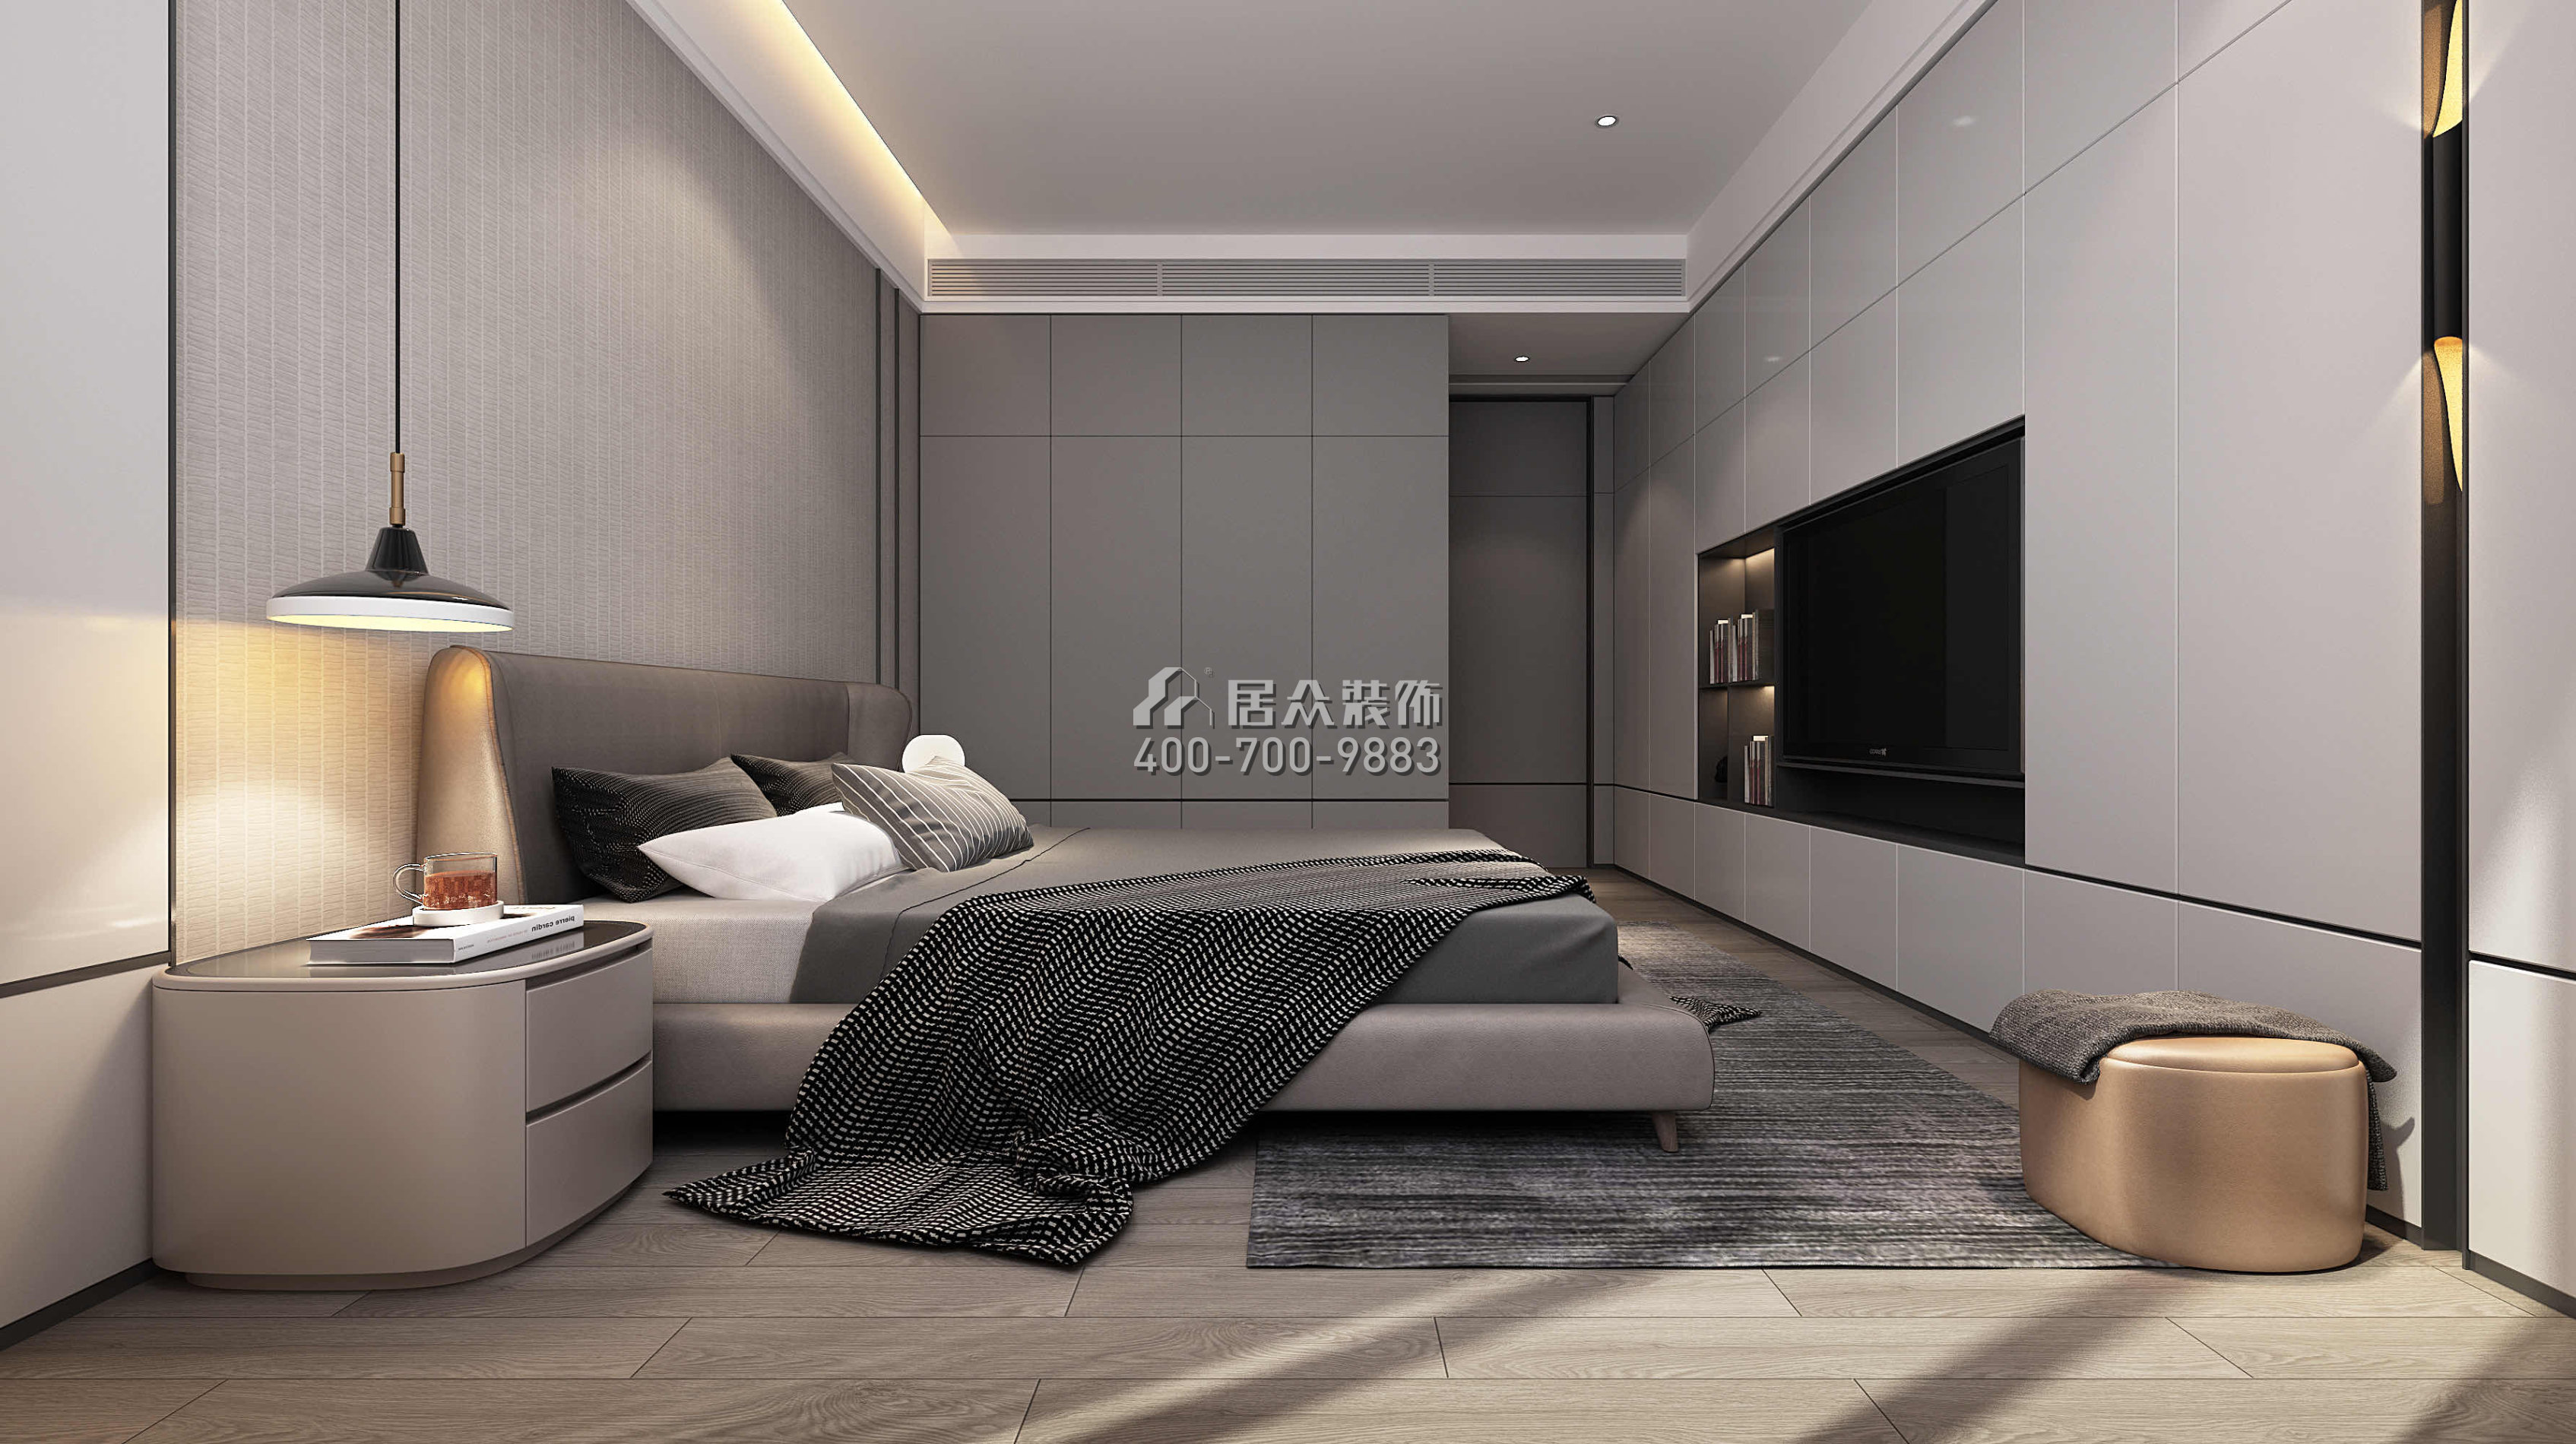 金地格林上院126平方米现代简约风格平层户型卧室装修效果图